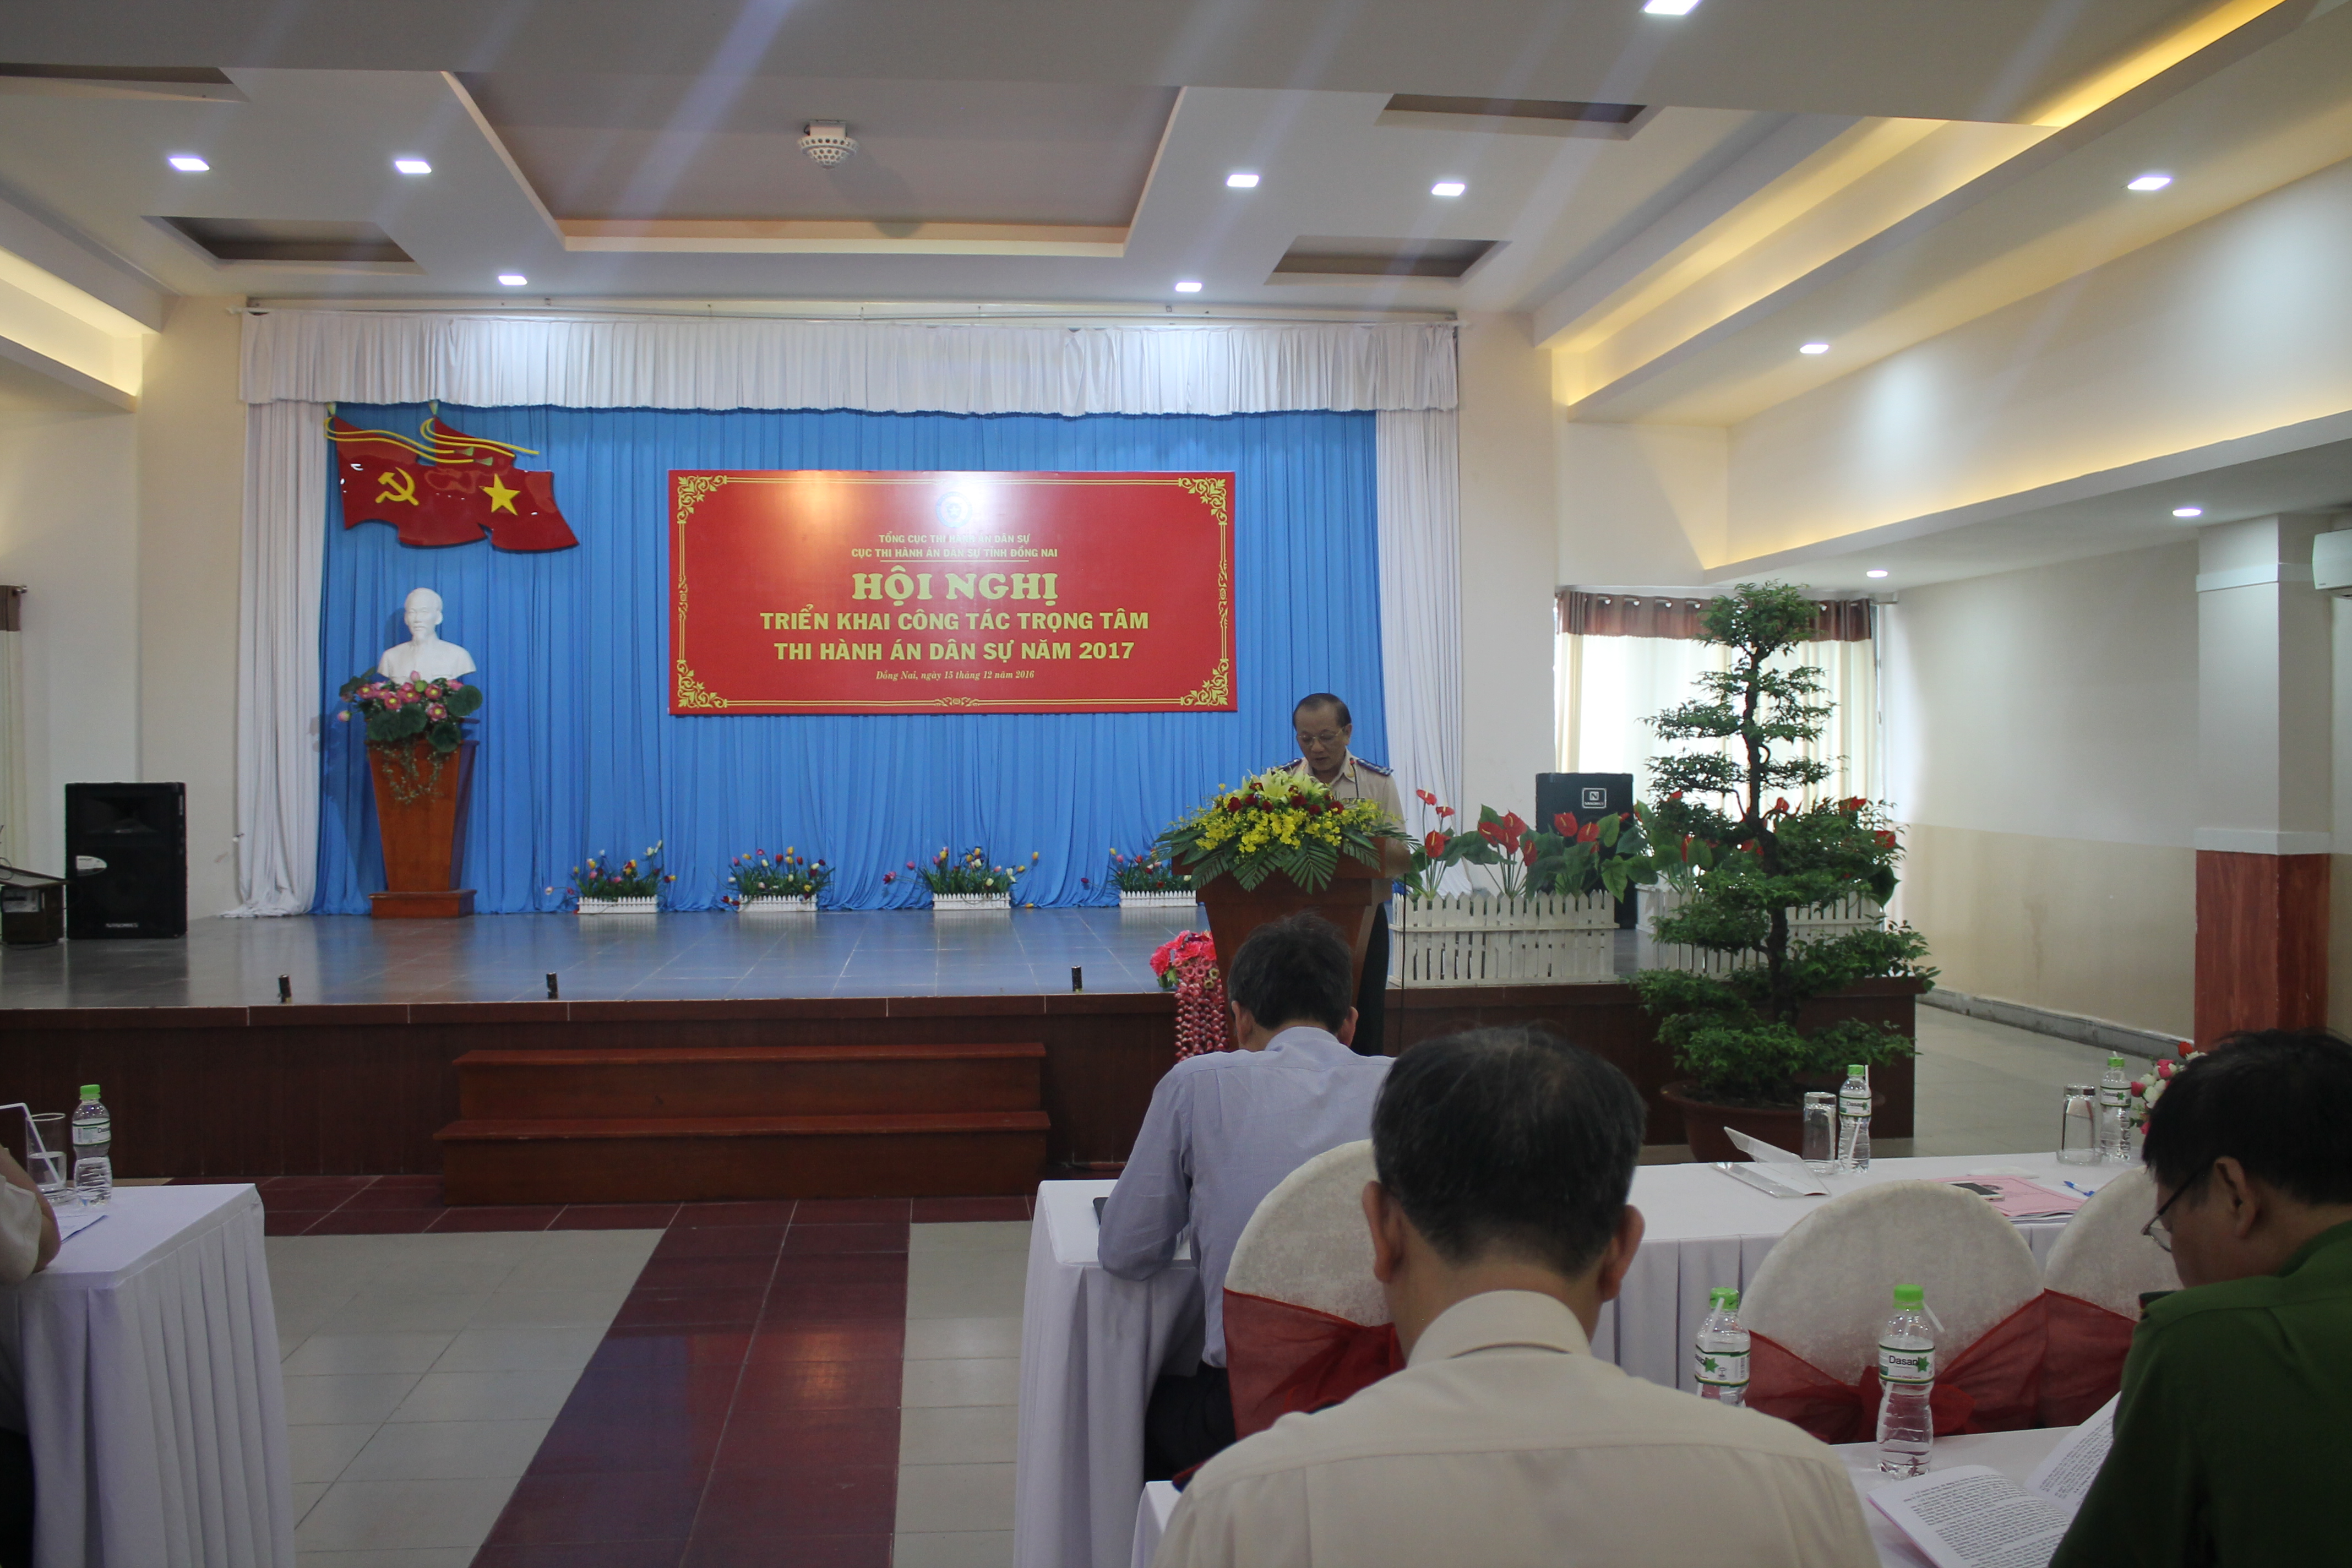 Cục THADS tỉnh Đồng Nai tổ chức Hội nghị triển khai nhiệm vụ công tác trọng tâm thi hành án dân sự năm 2017